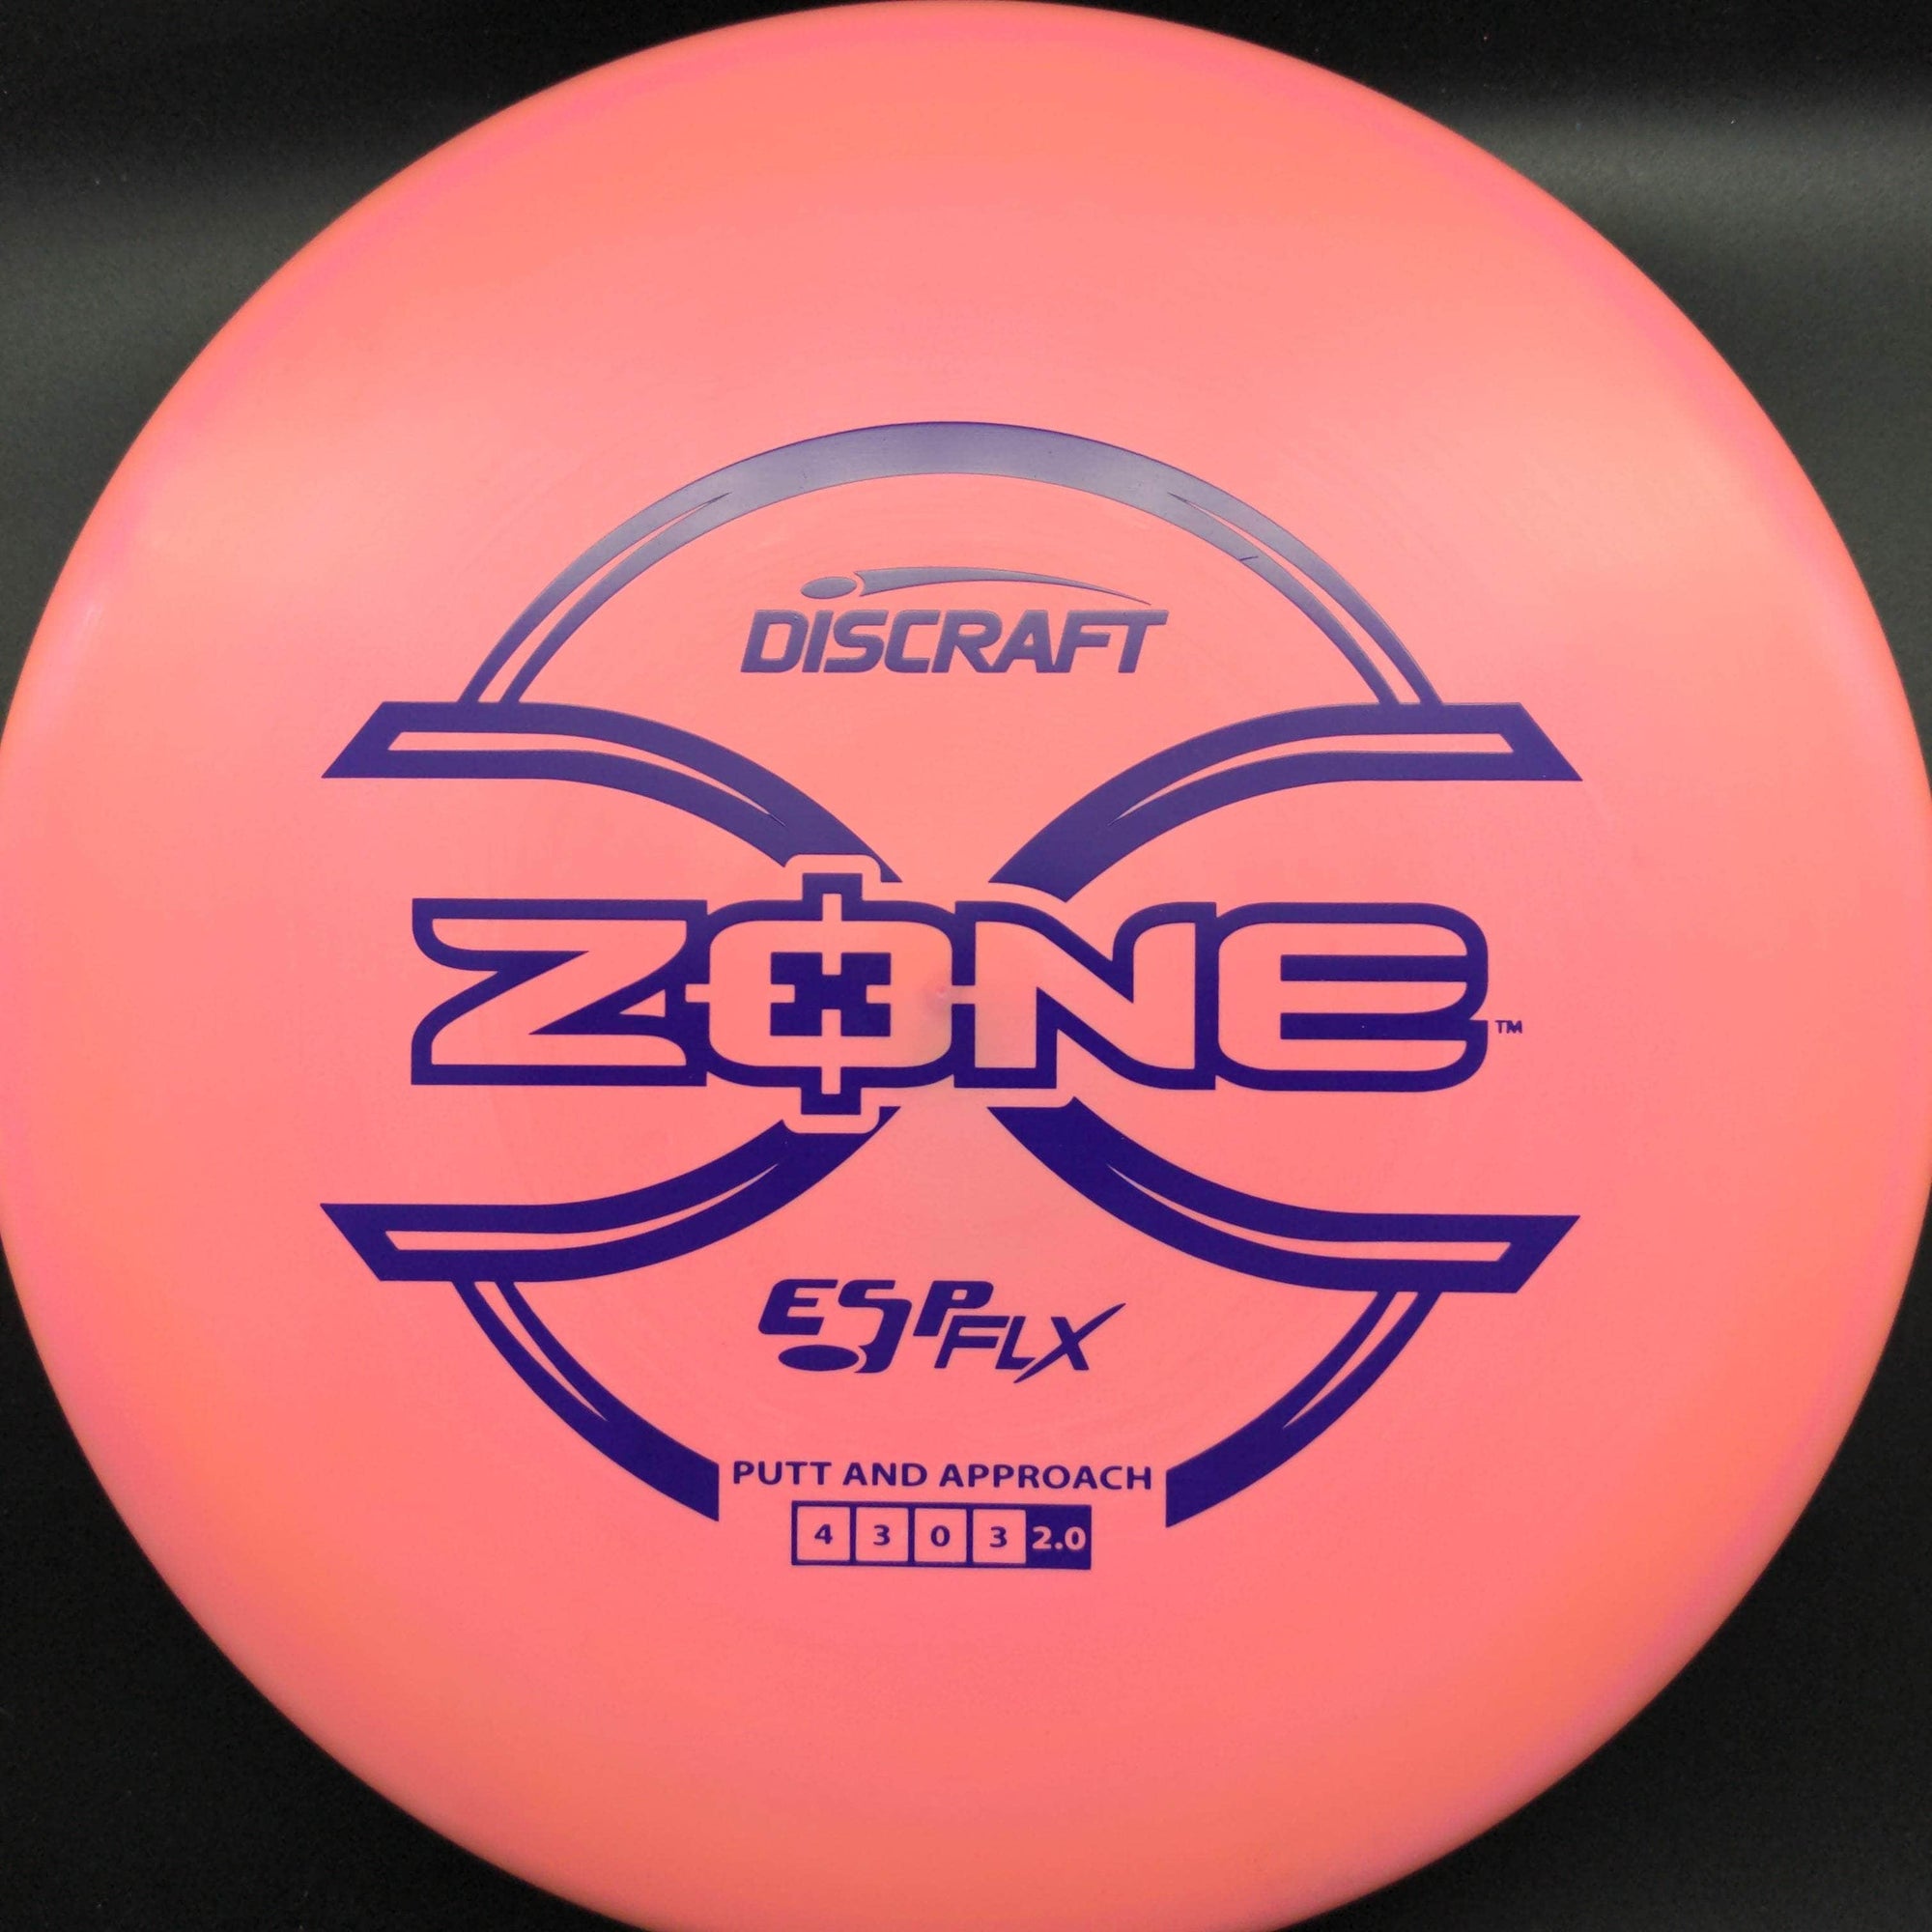 Discraft Mid Range Pink Purple Stamp 174g Zone, ESP Flx